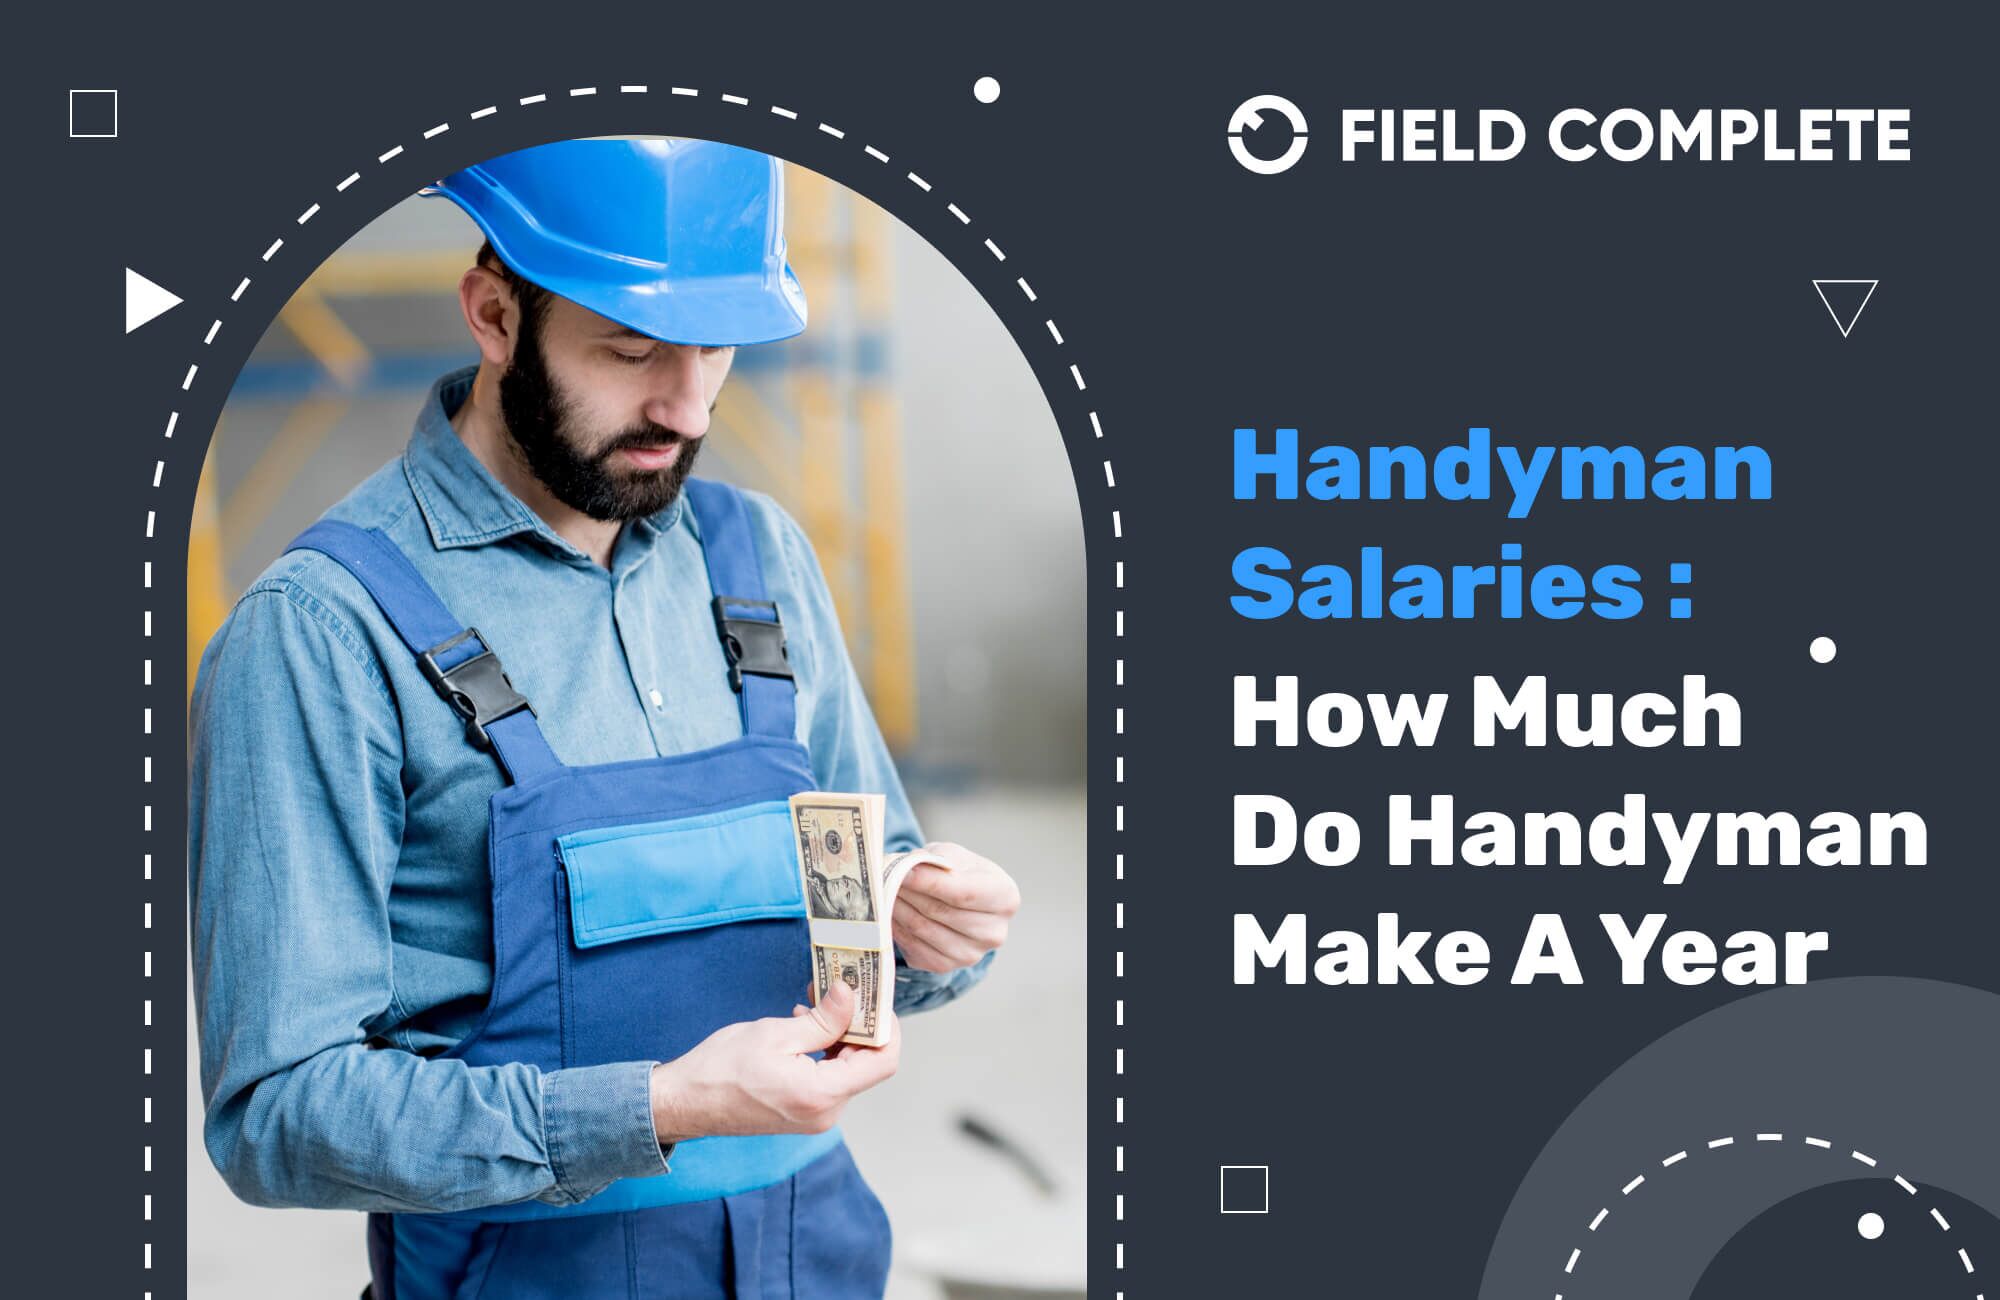 Handyman salaries – How much do handyman make a year